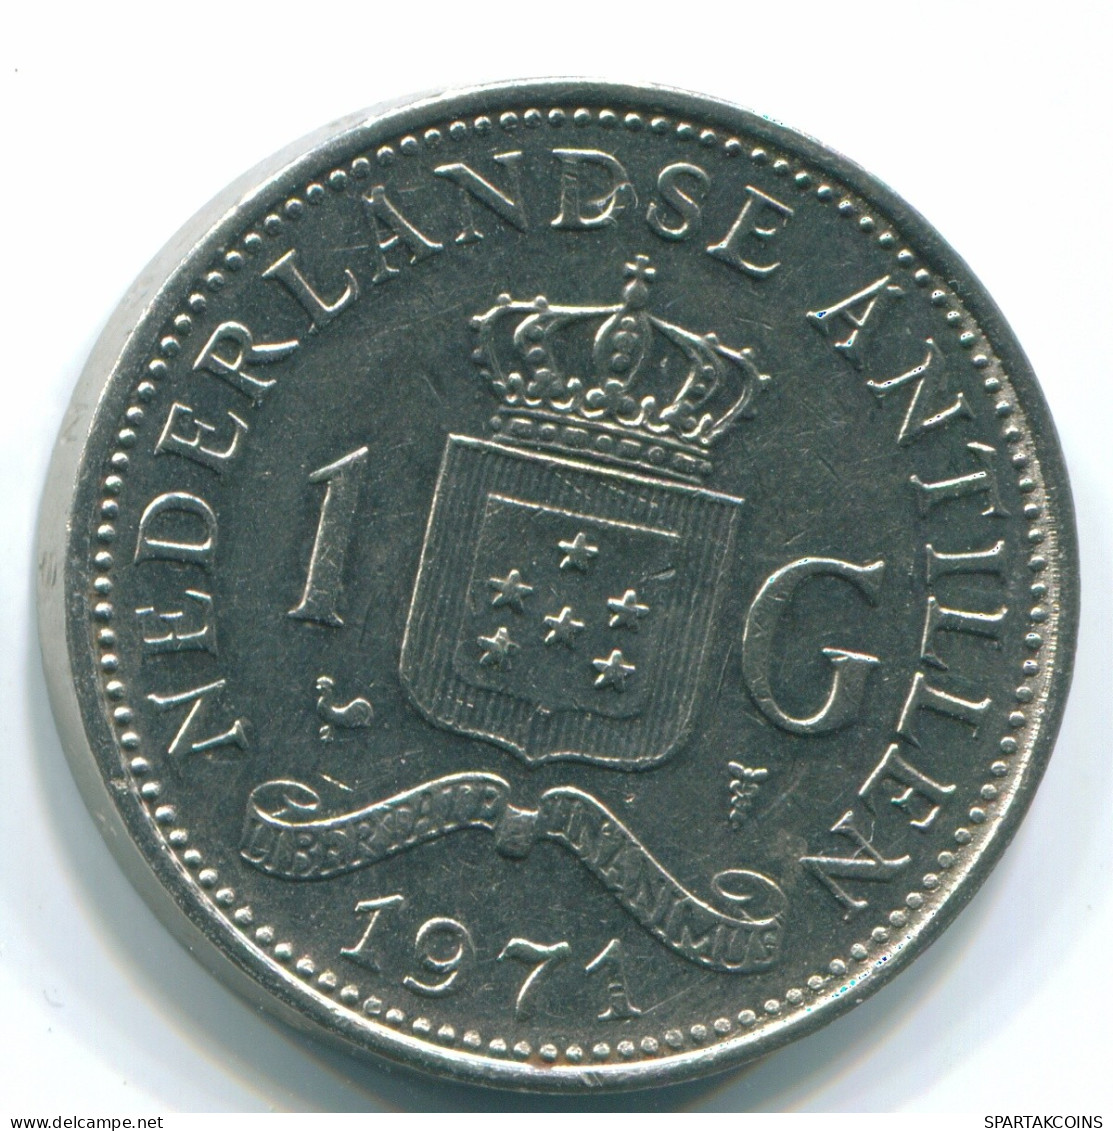 1 GULDEN 1971 NIEDERLÄNDISCHE ANTILLEN Nickel Koloniale Münze #S11969.D.A - Antille Olandesi